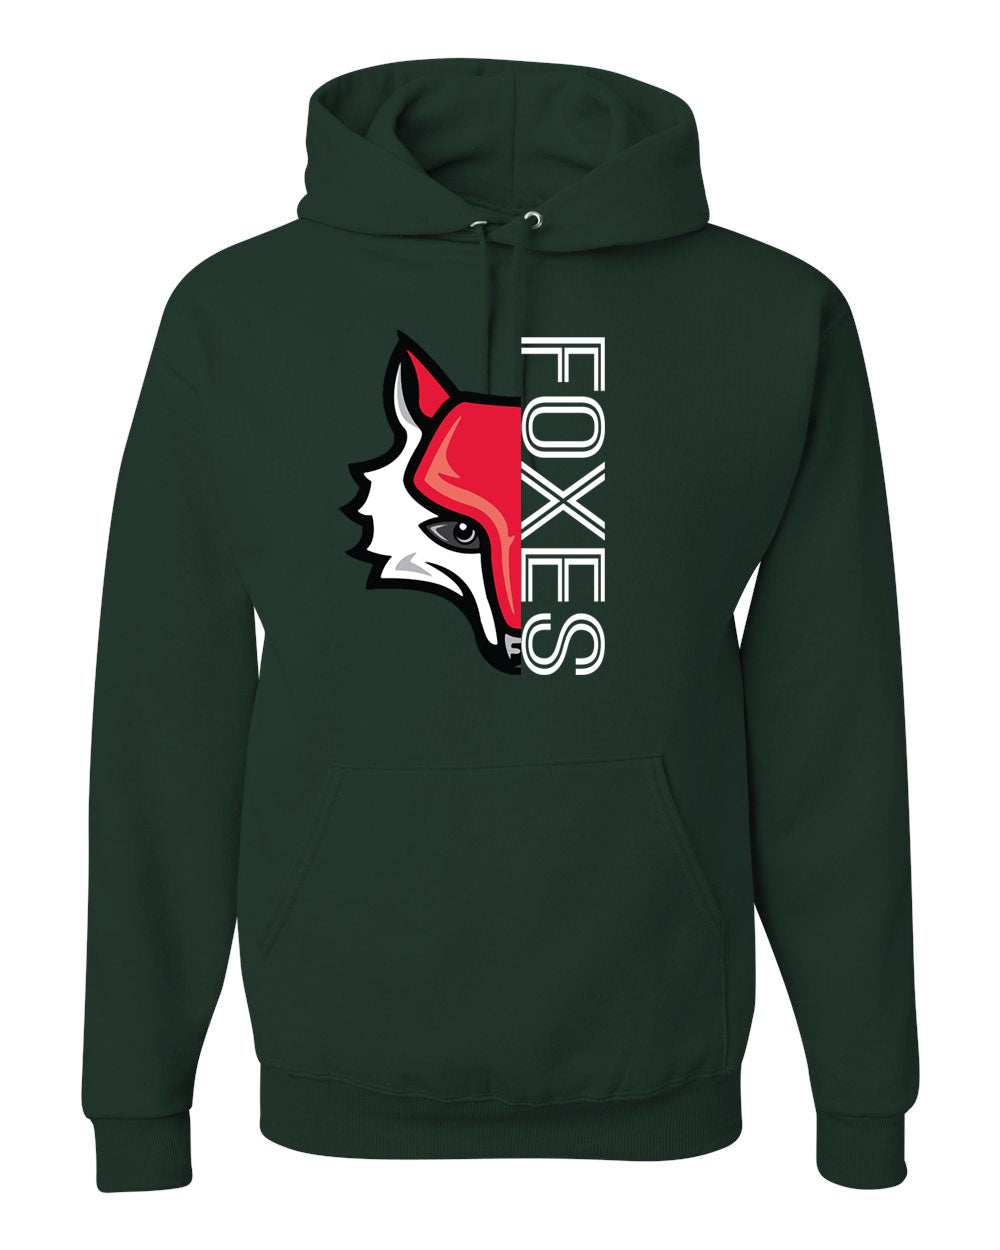 Half Fox Hooded Sweatshirt